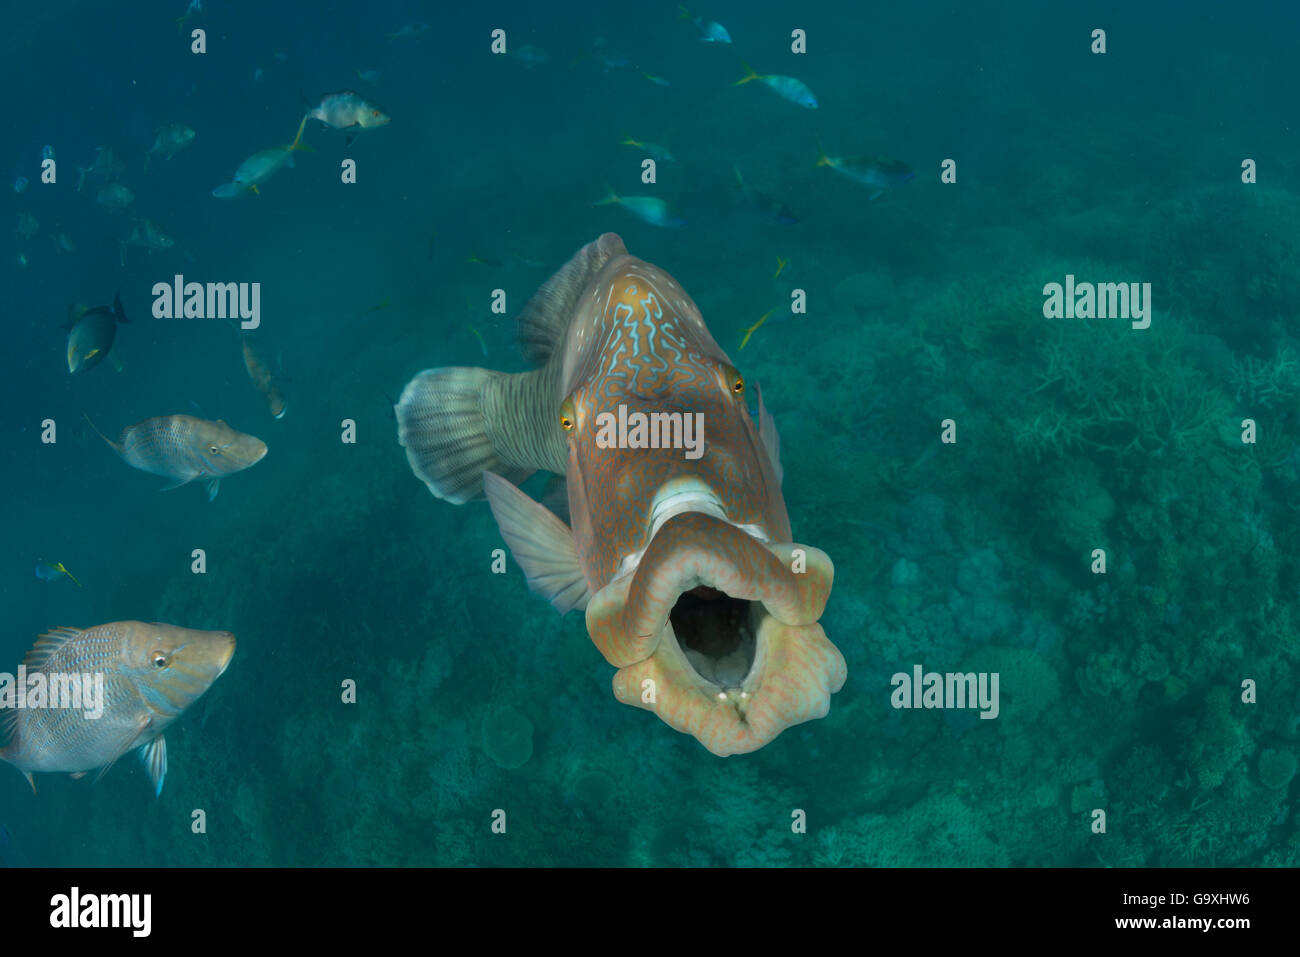 Napoleon lippfisch (Cheilinus undulatus) männlichen Erwachsenen mit Mund, Gähnen Verhalten offen, vielleicht eine Form der Kommunikation, Great Barrier Reef, Queensland, Australien. Stockfoto